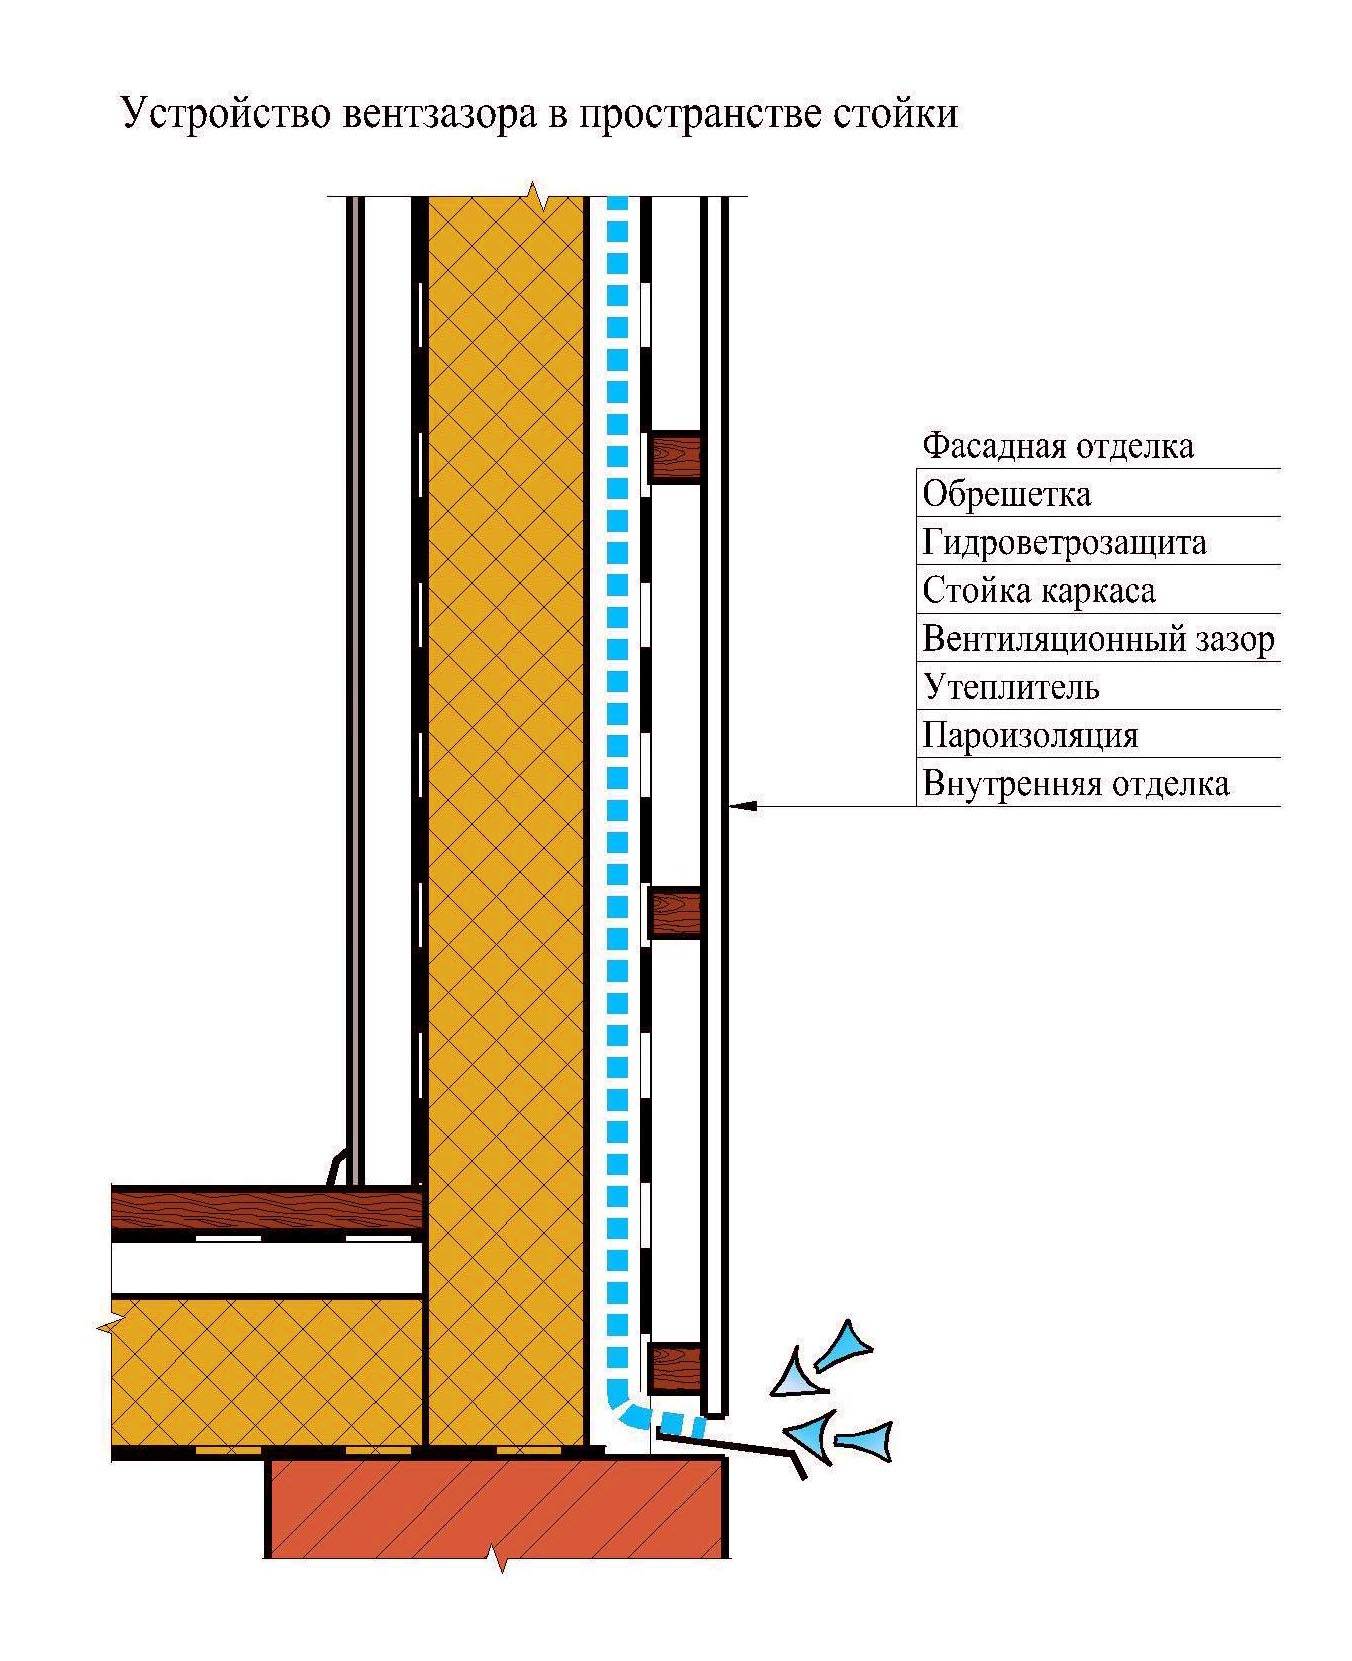 Теория вентиляционного и воздушного зазоров. зачем нужен вентиляционный зазор в каркасном доме, вентзазор на фасадах